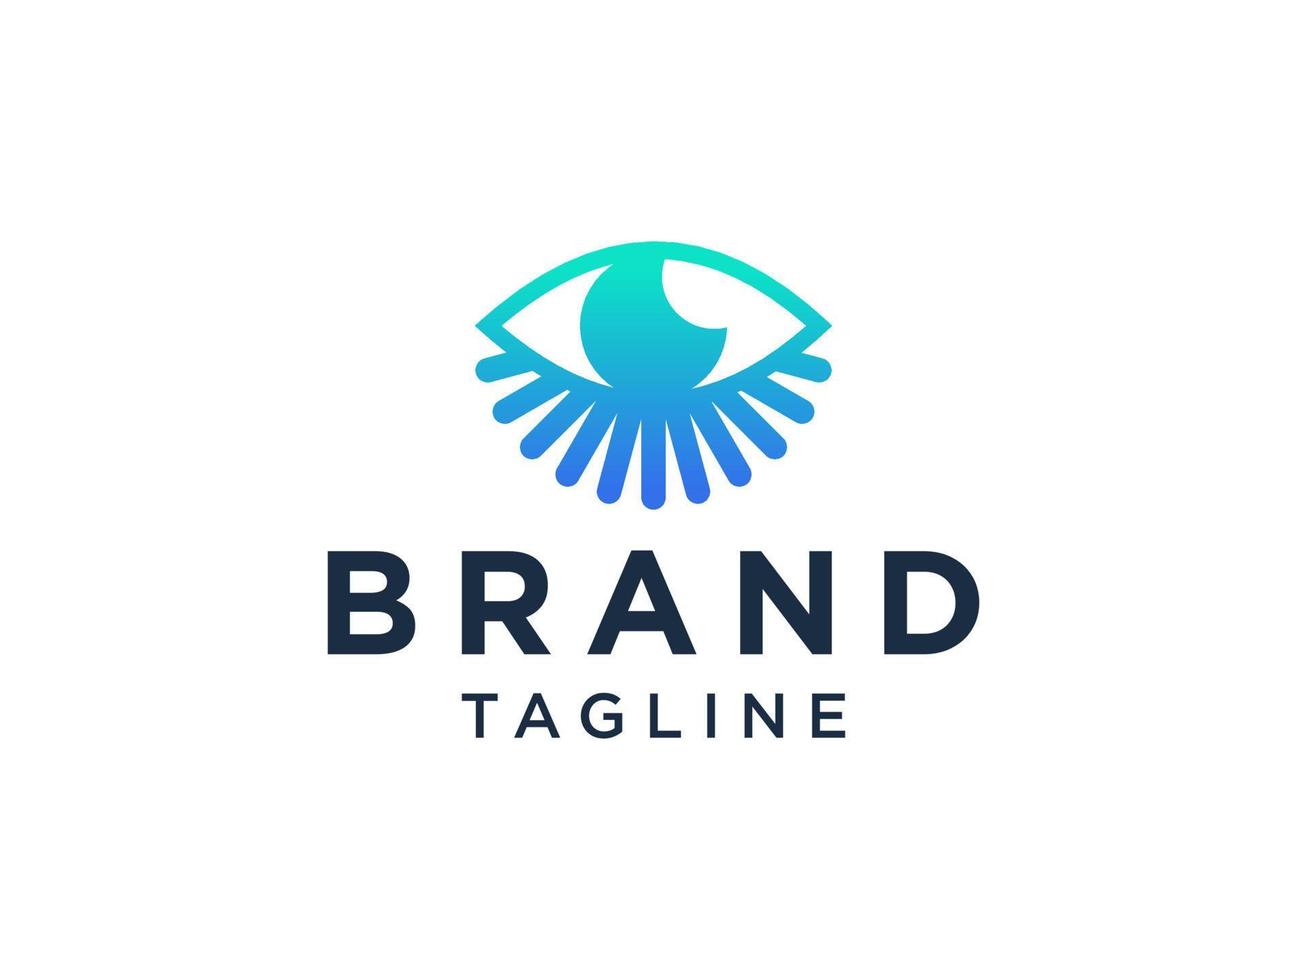 abstrakt ögonfrans logotyp. blå linjär stil isolerad på vit bakgrund. användbar för företags- och skönhetslogotyper. platt vektor logotyp designmall element.